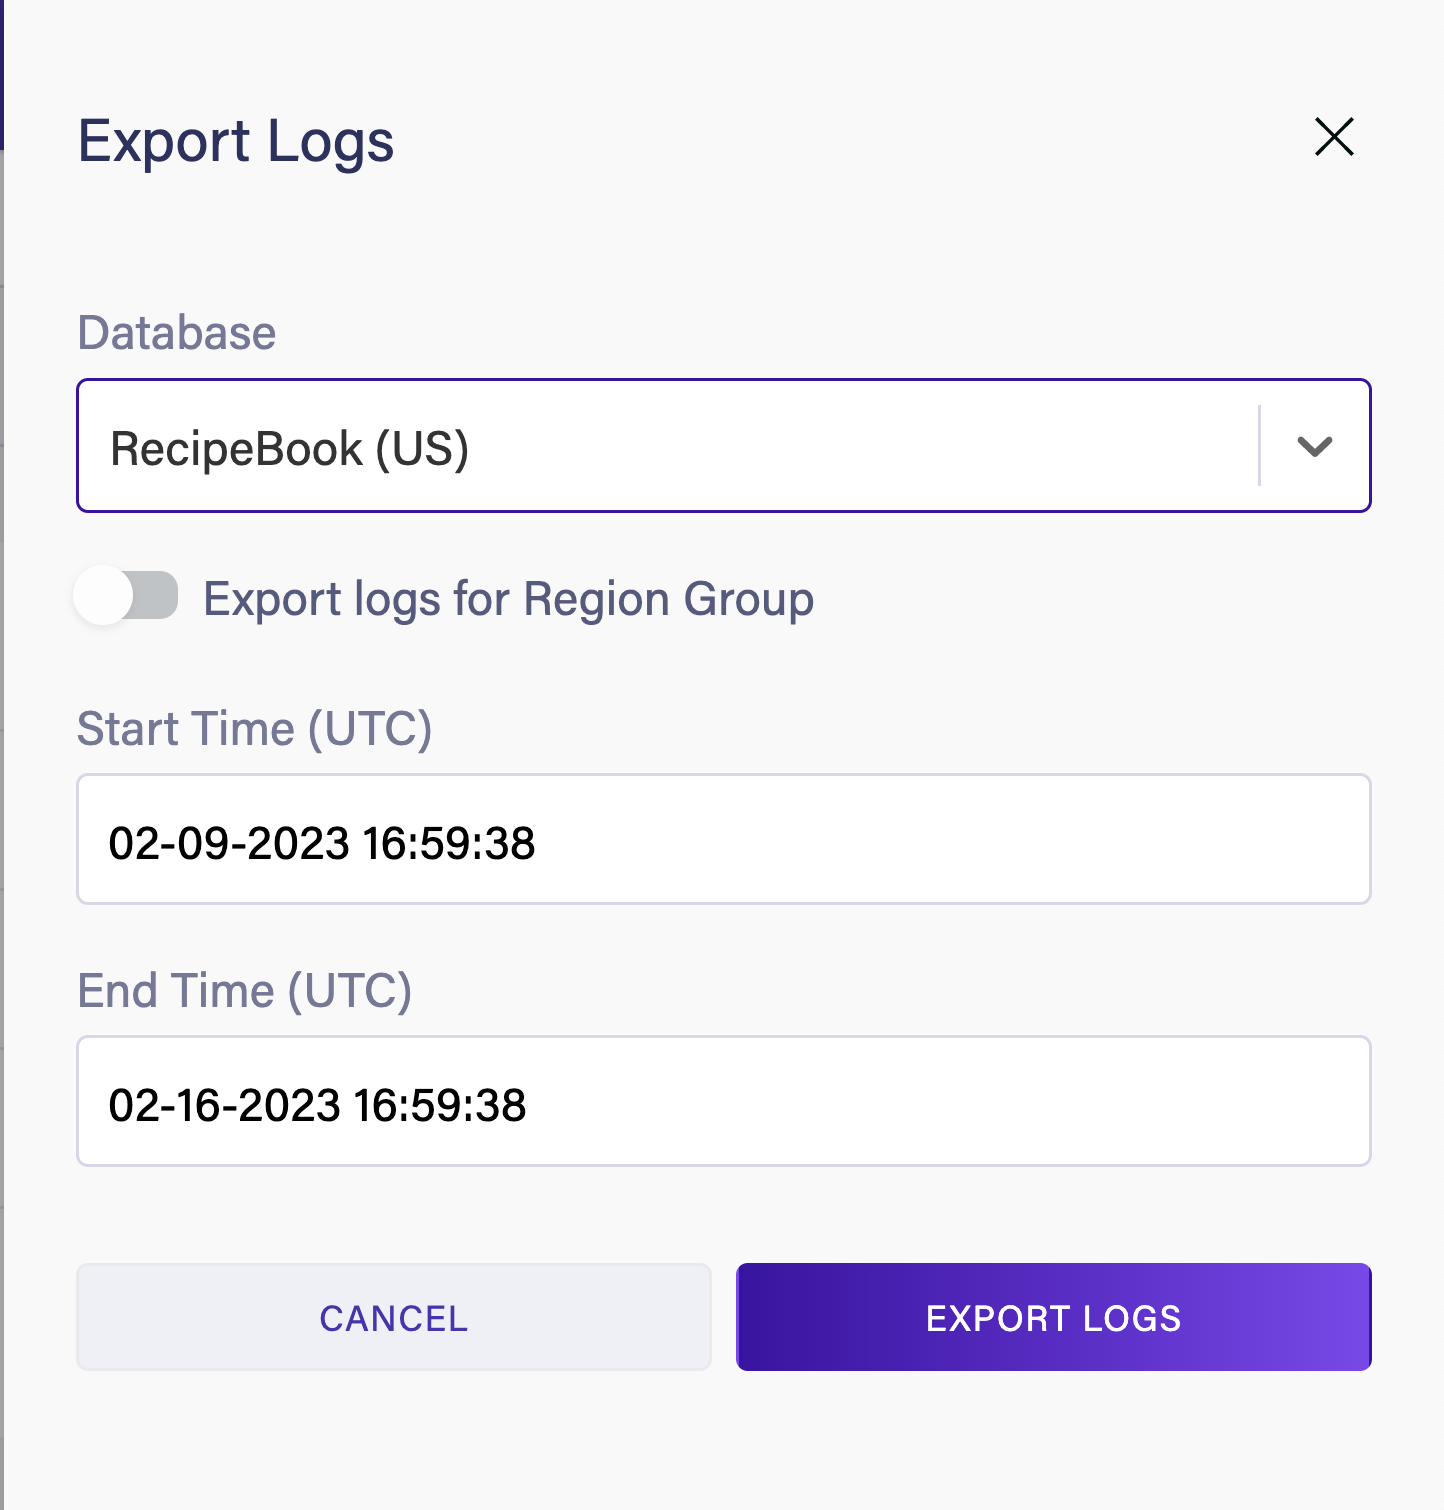 Export logs